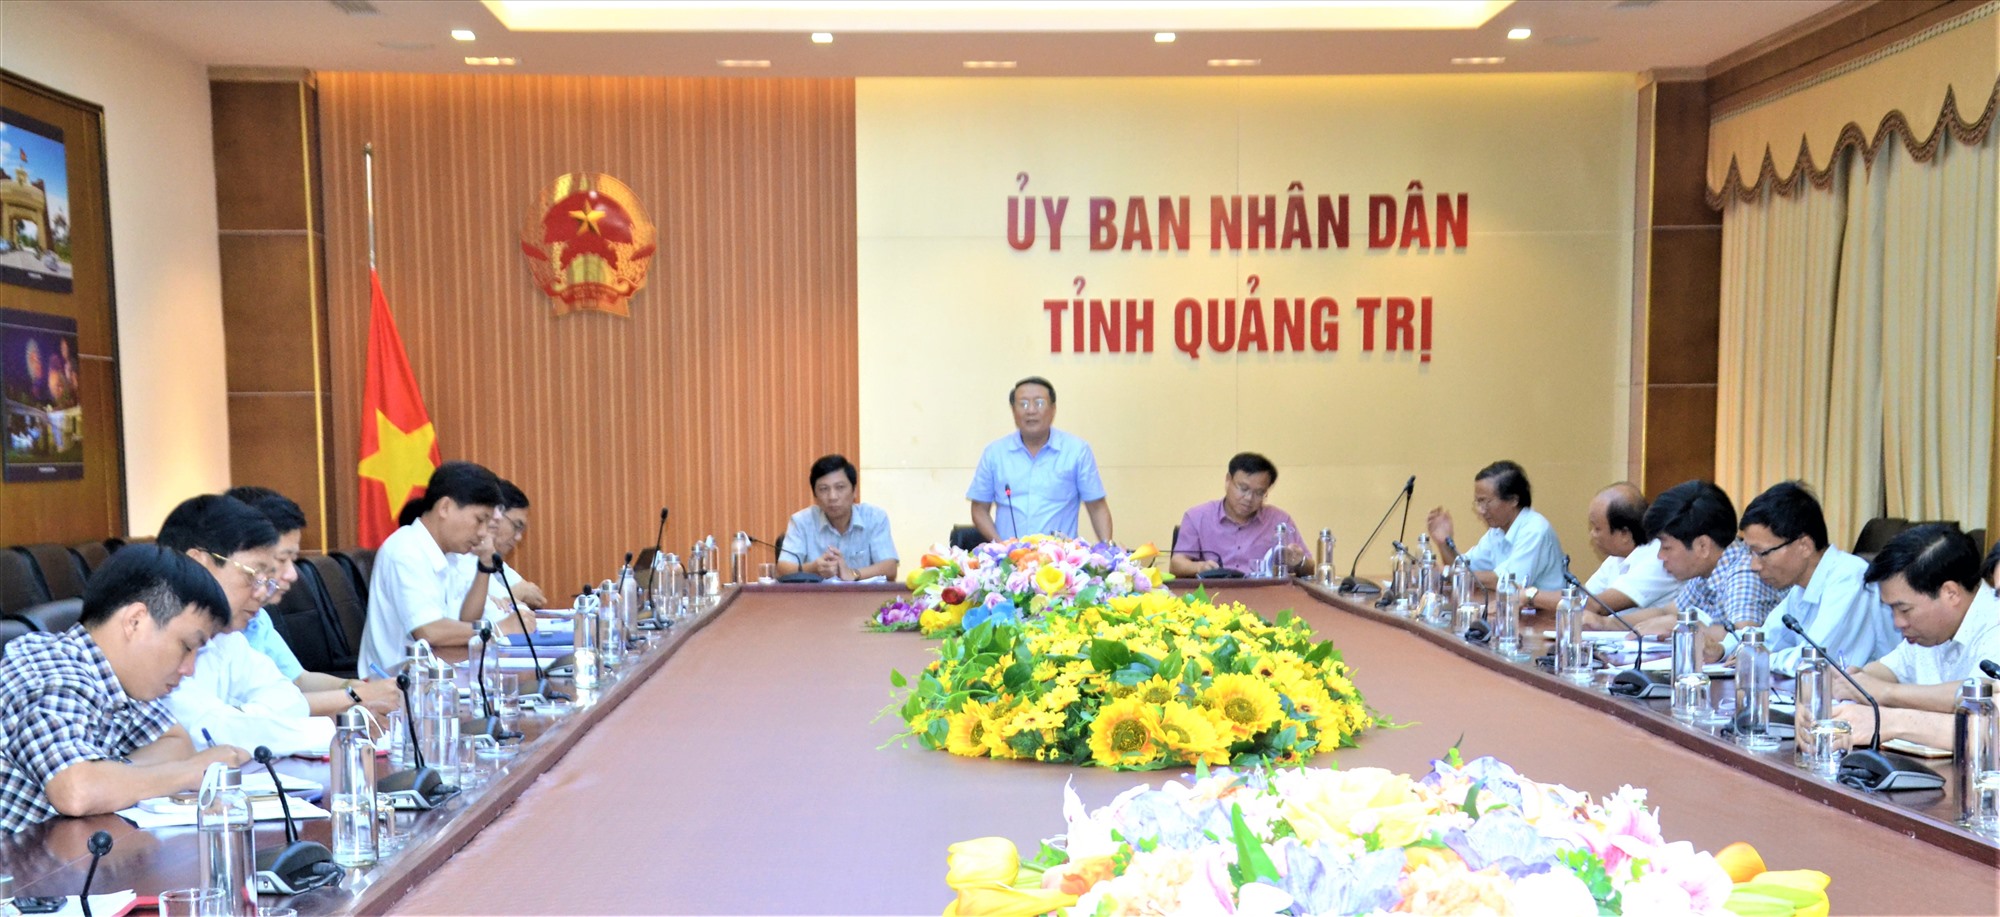 Phó Chủ tịch Thường trực UBND tỉnh Hà Sỹ Đồng phát biểu kết luận cuộc họp - Ảnh: An Phong